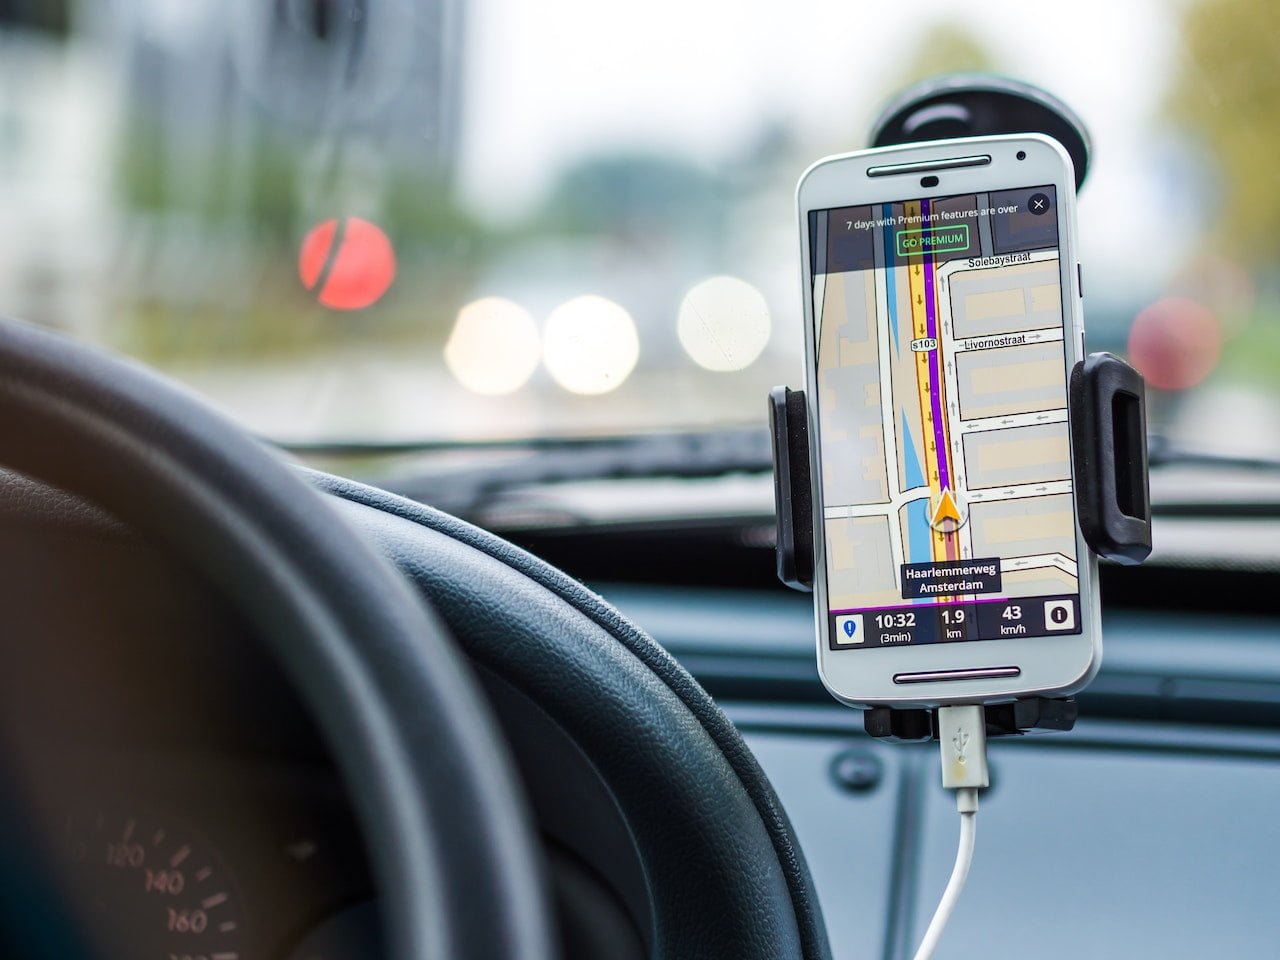 biały smartfon z włączoną nawigacją samochodową zamocowany w uchwycie samochodowym, który jest przyczepiony do szyby auta